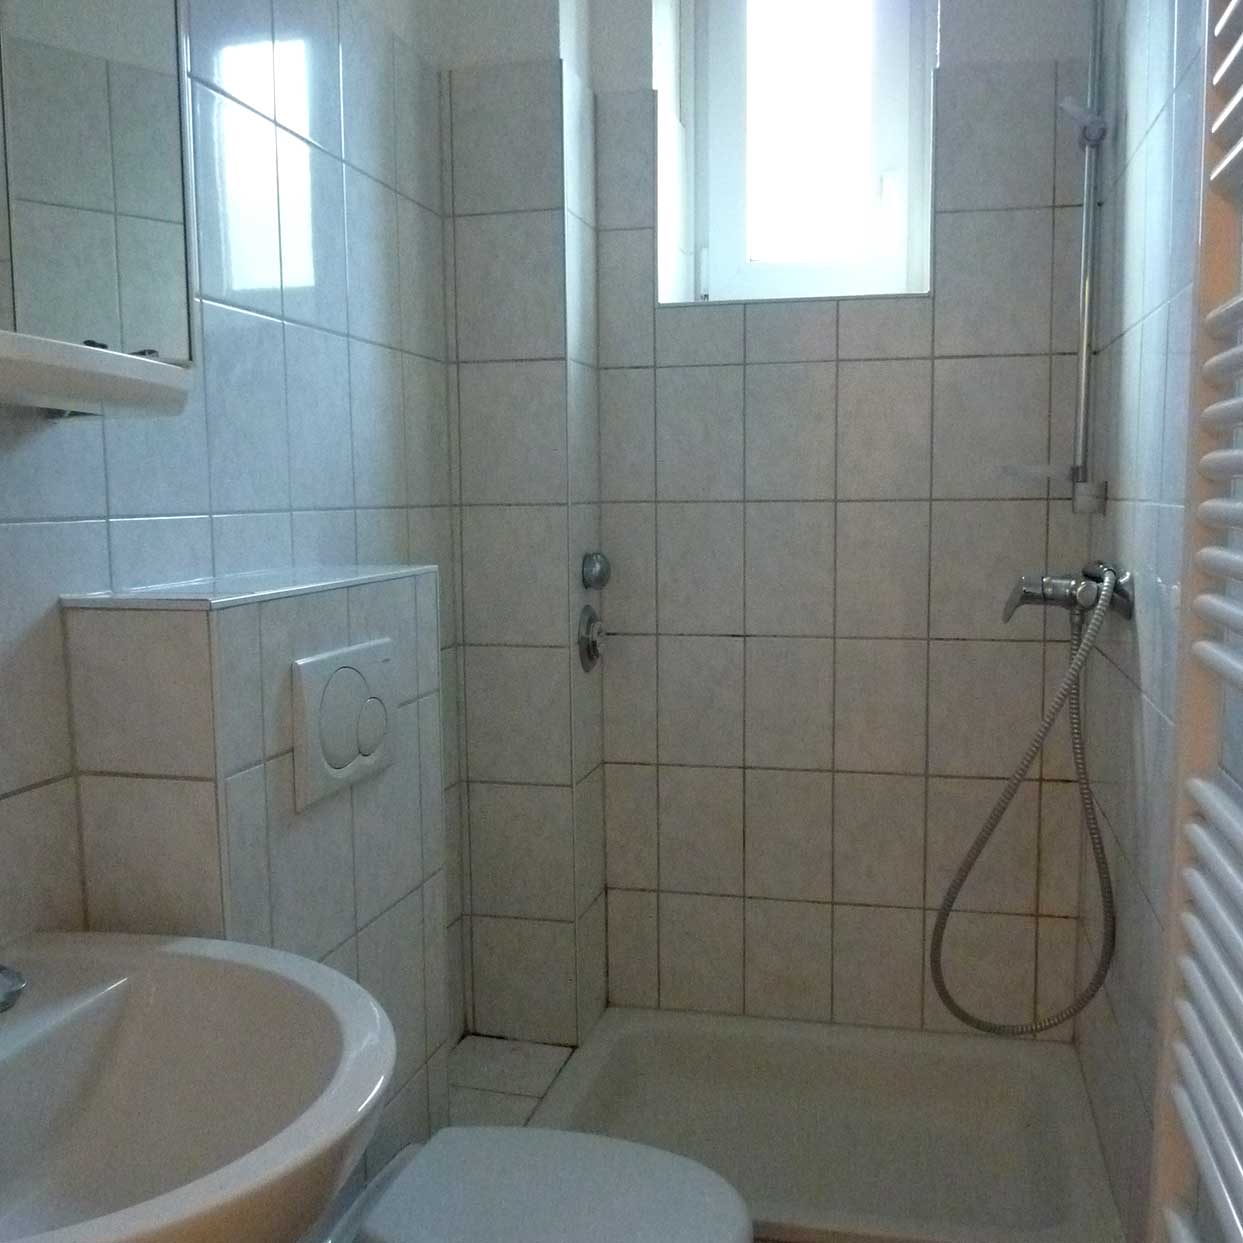 Badezimmer einer Wohnung der Baugenossenschaft Kiel Hassee